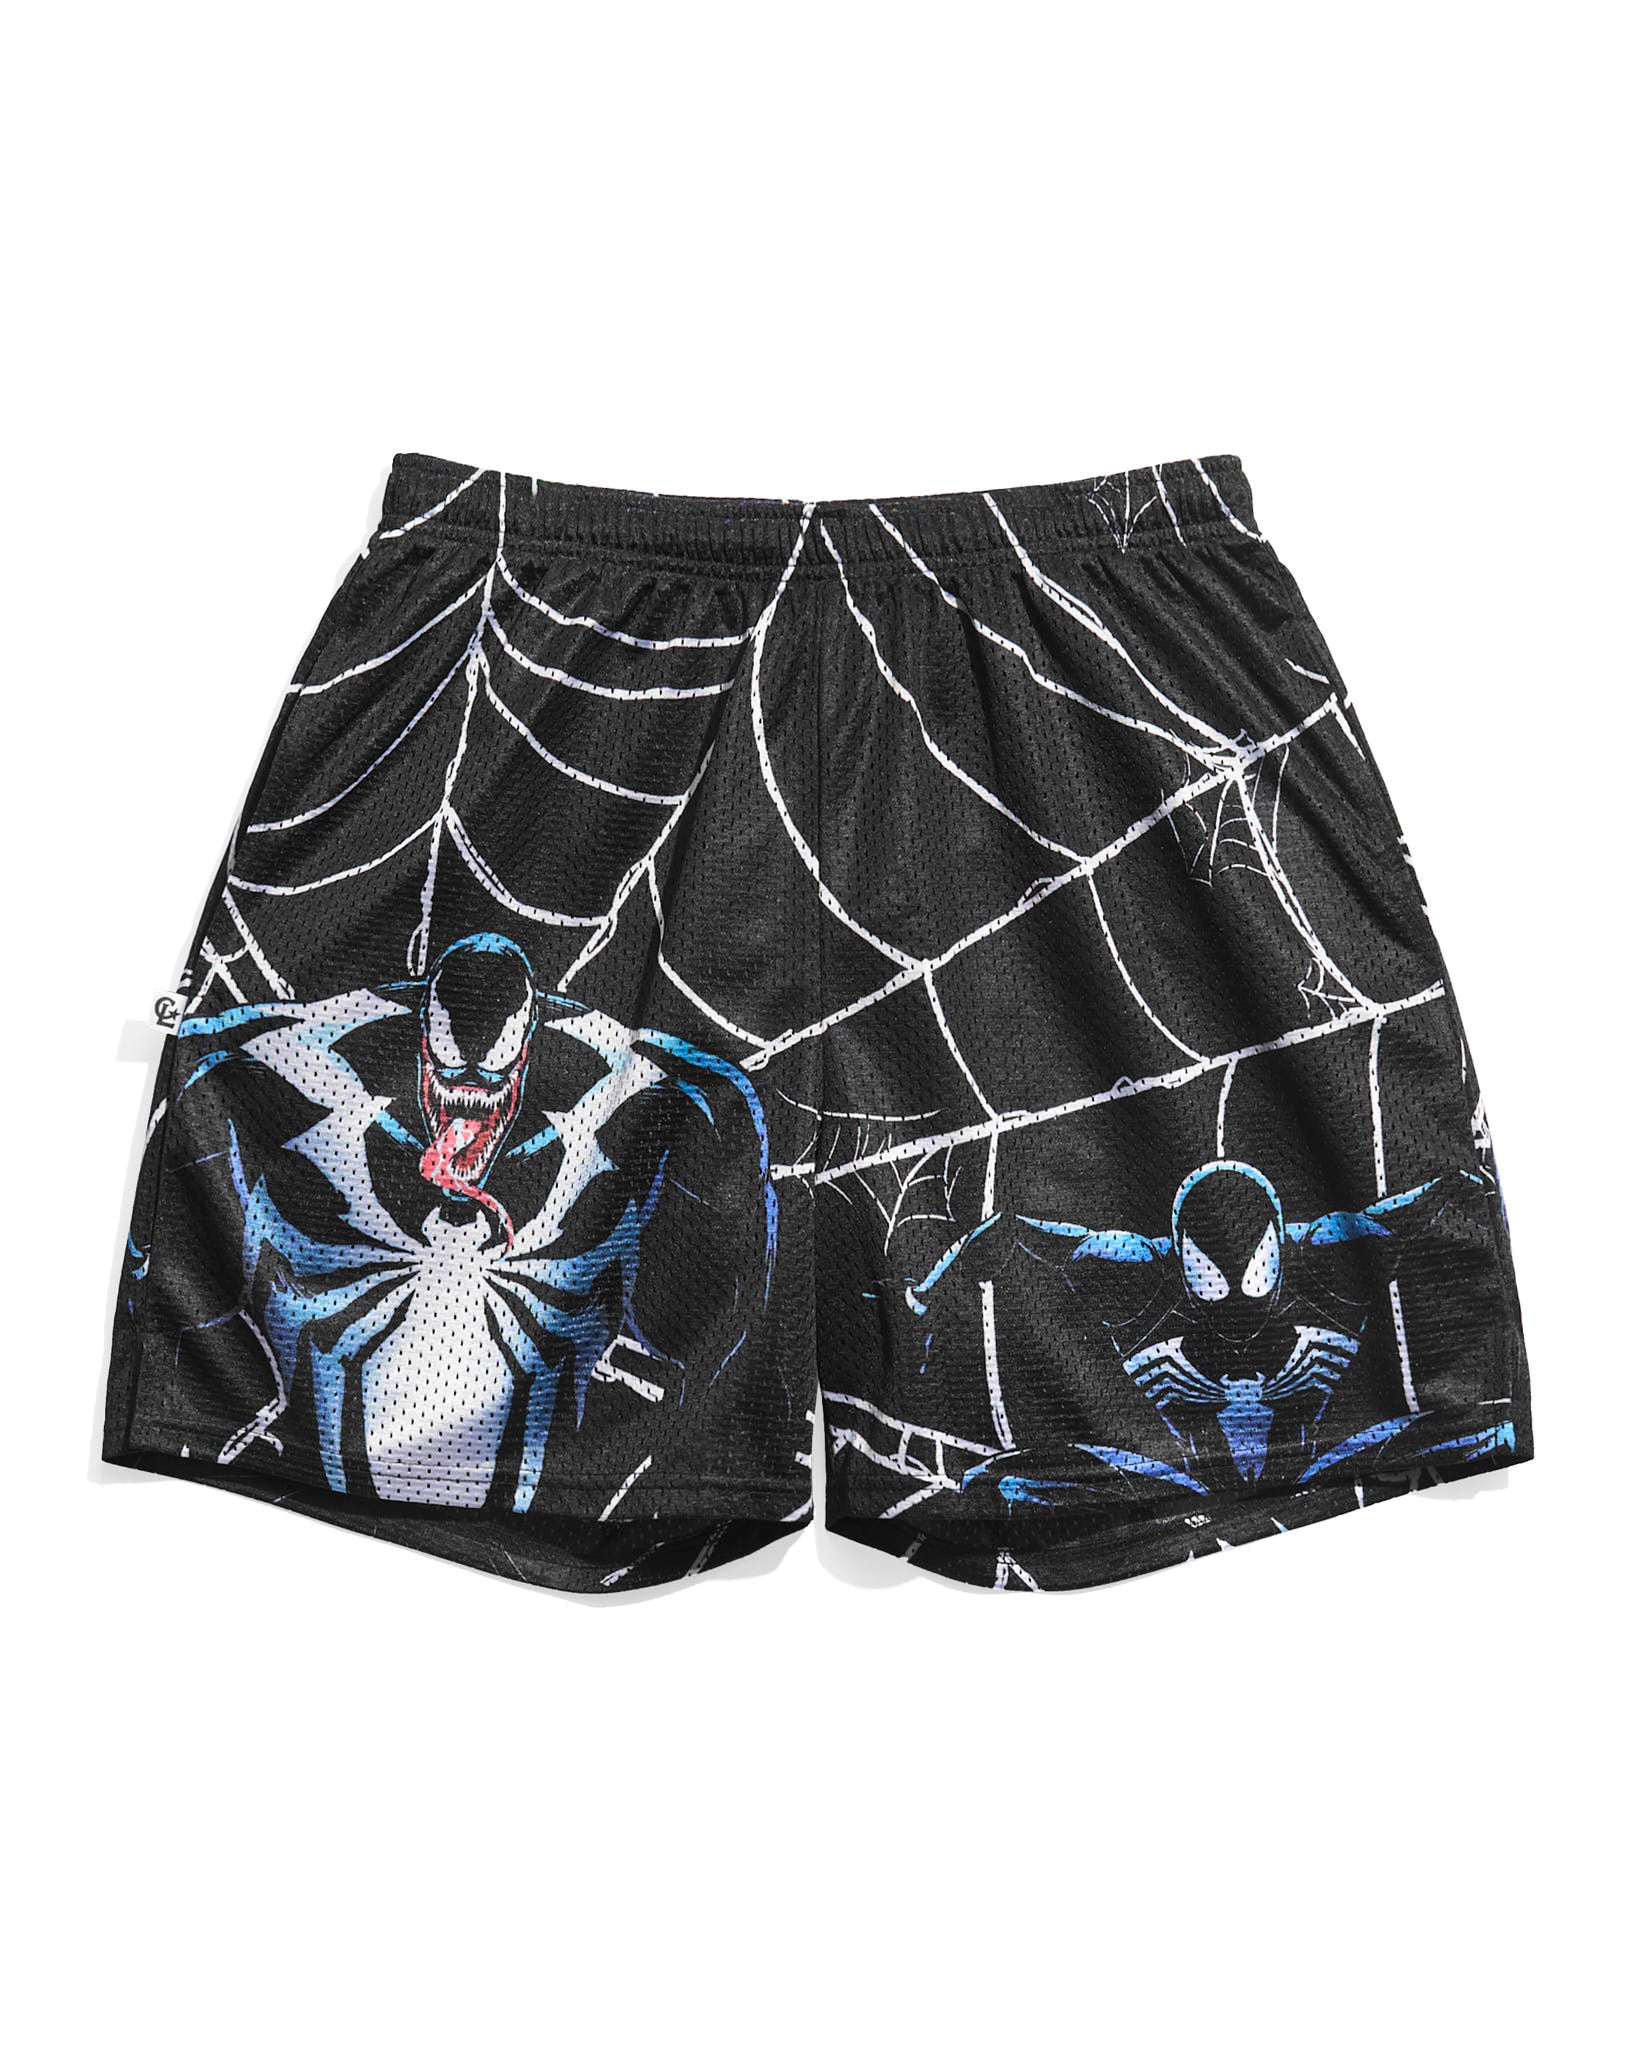 Spider-Man 2 Venom Web Retro Shorts